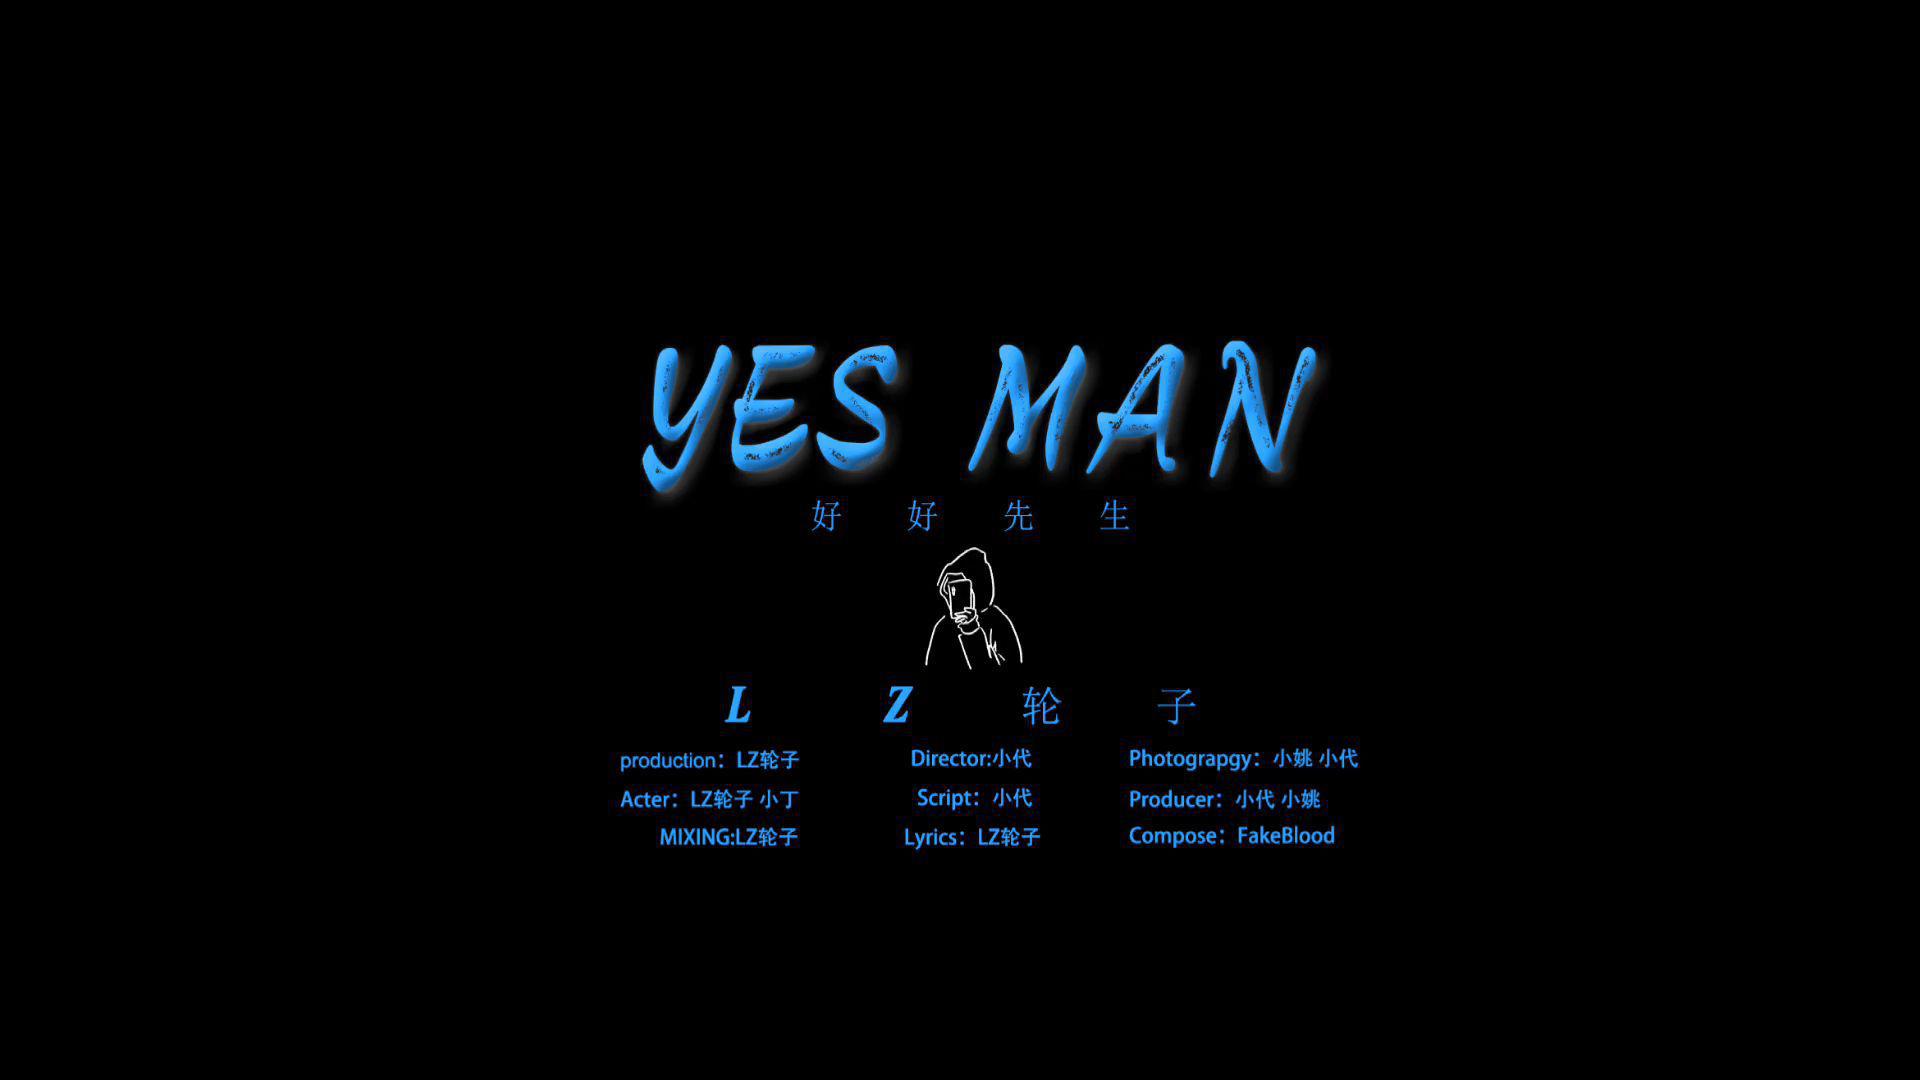 LZ轮子 - Yes man MV